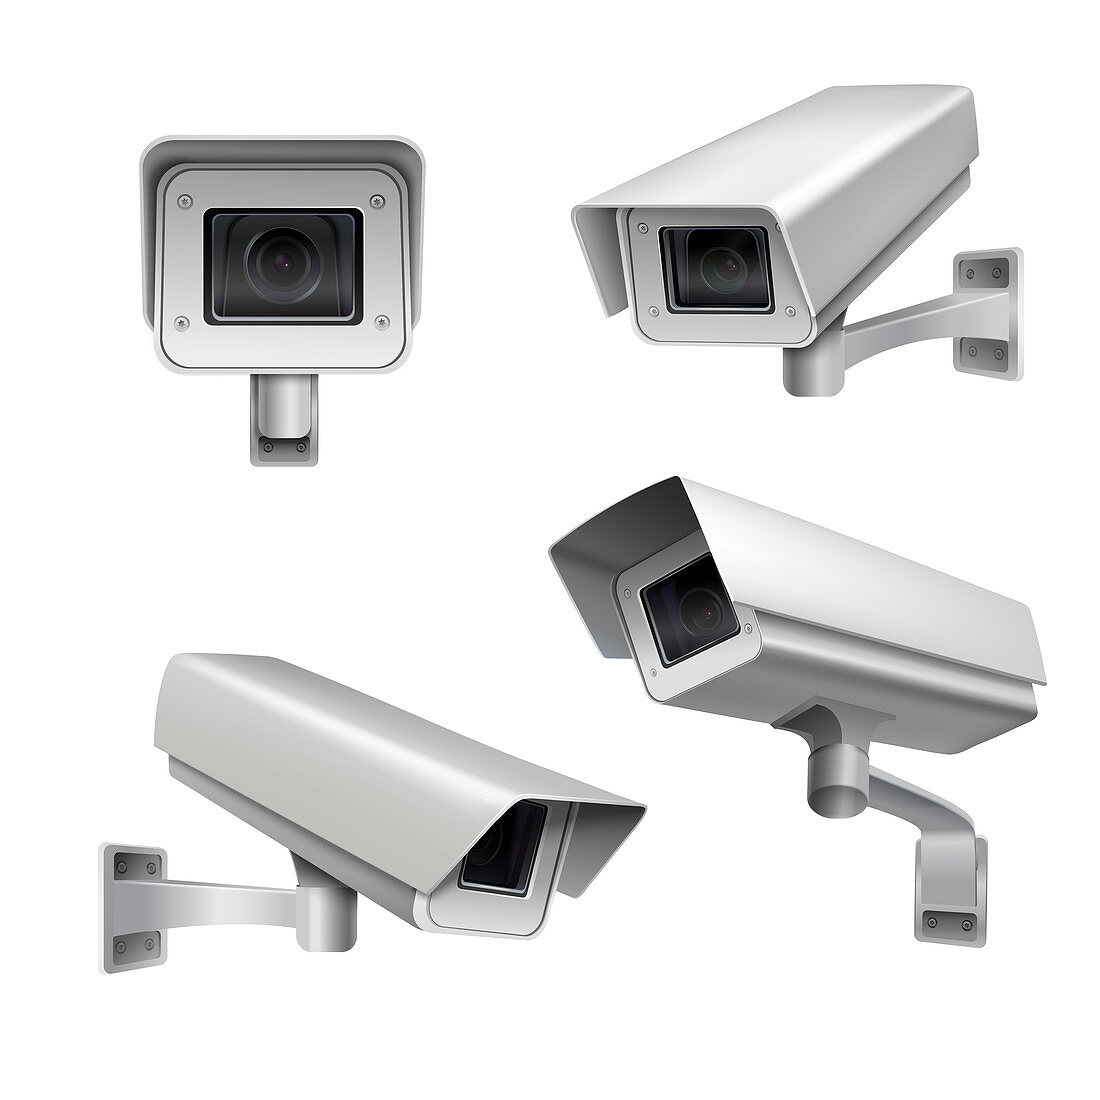 Surveillance cameras, illustration